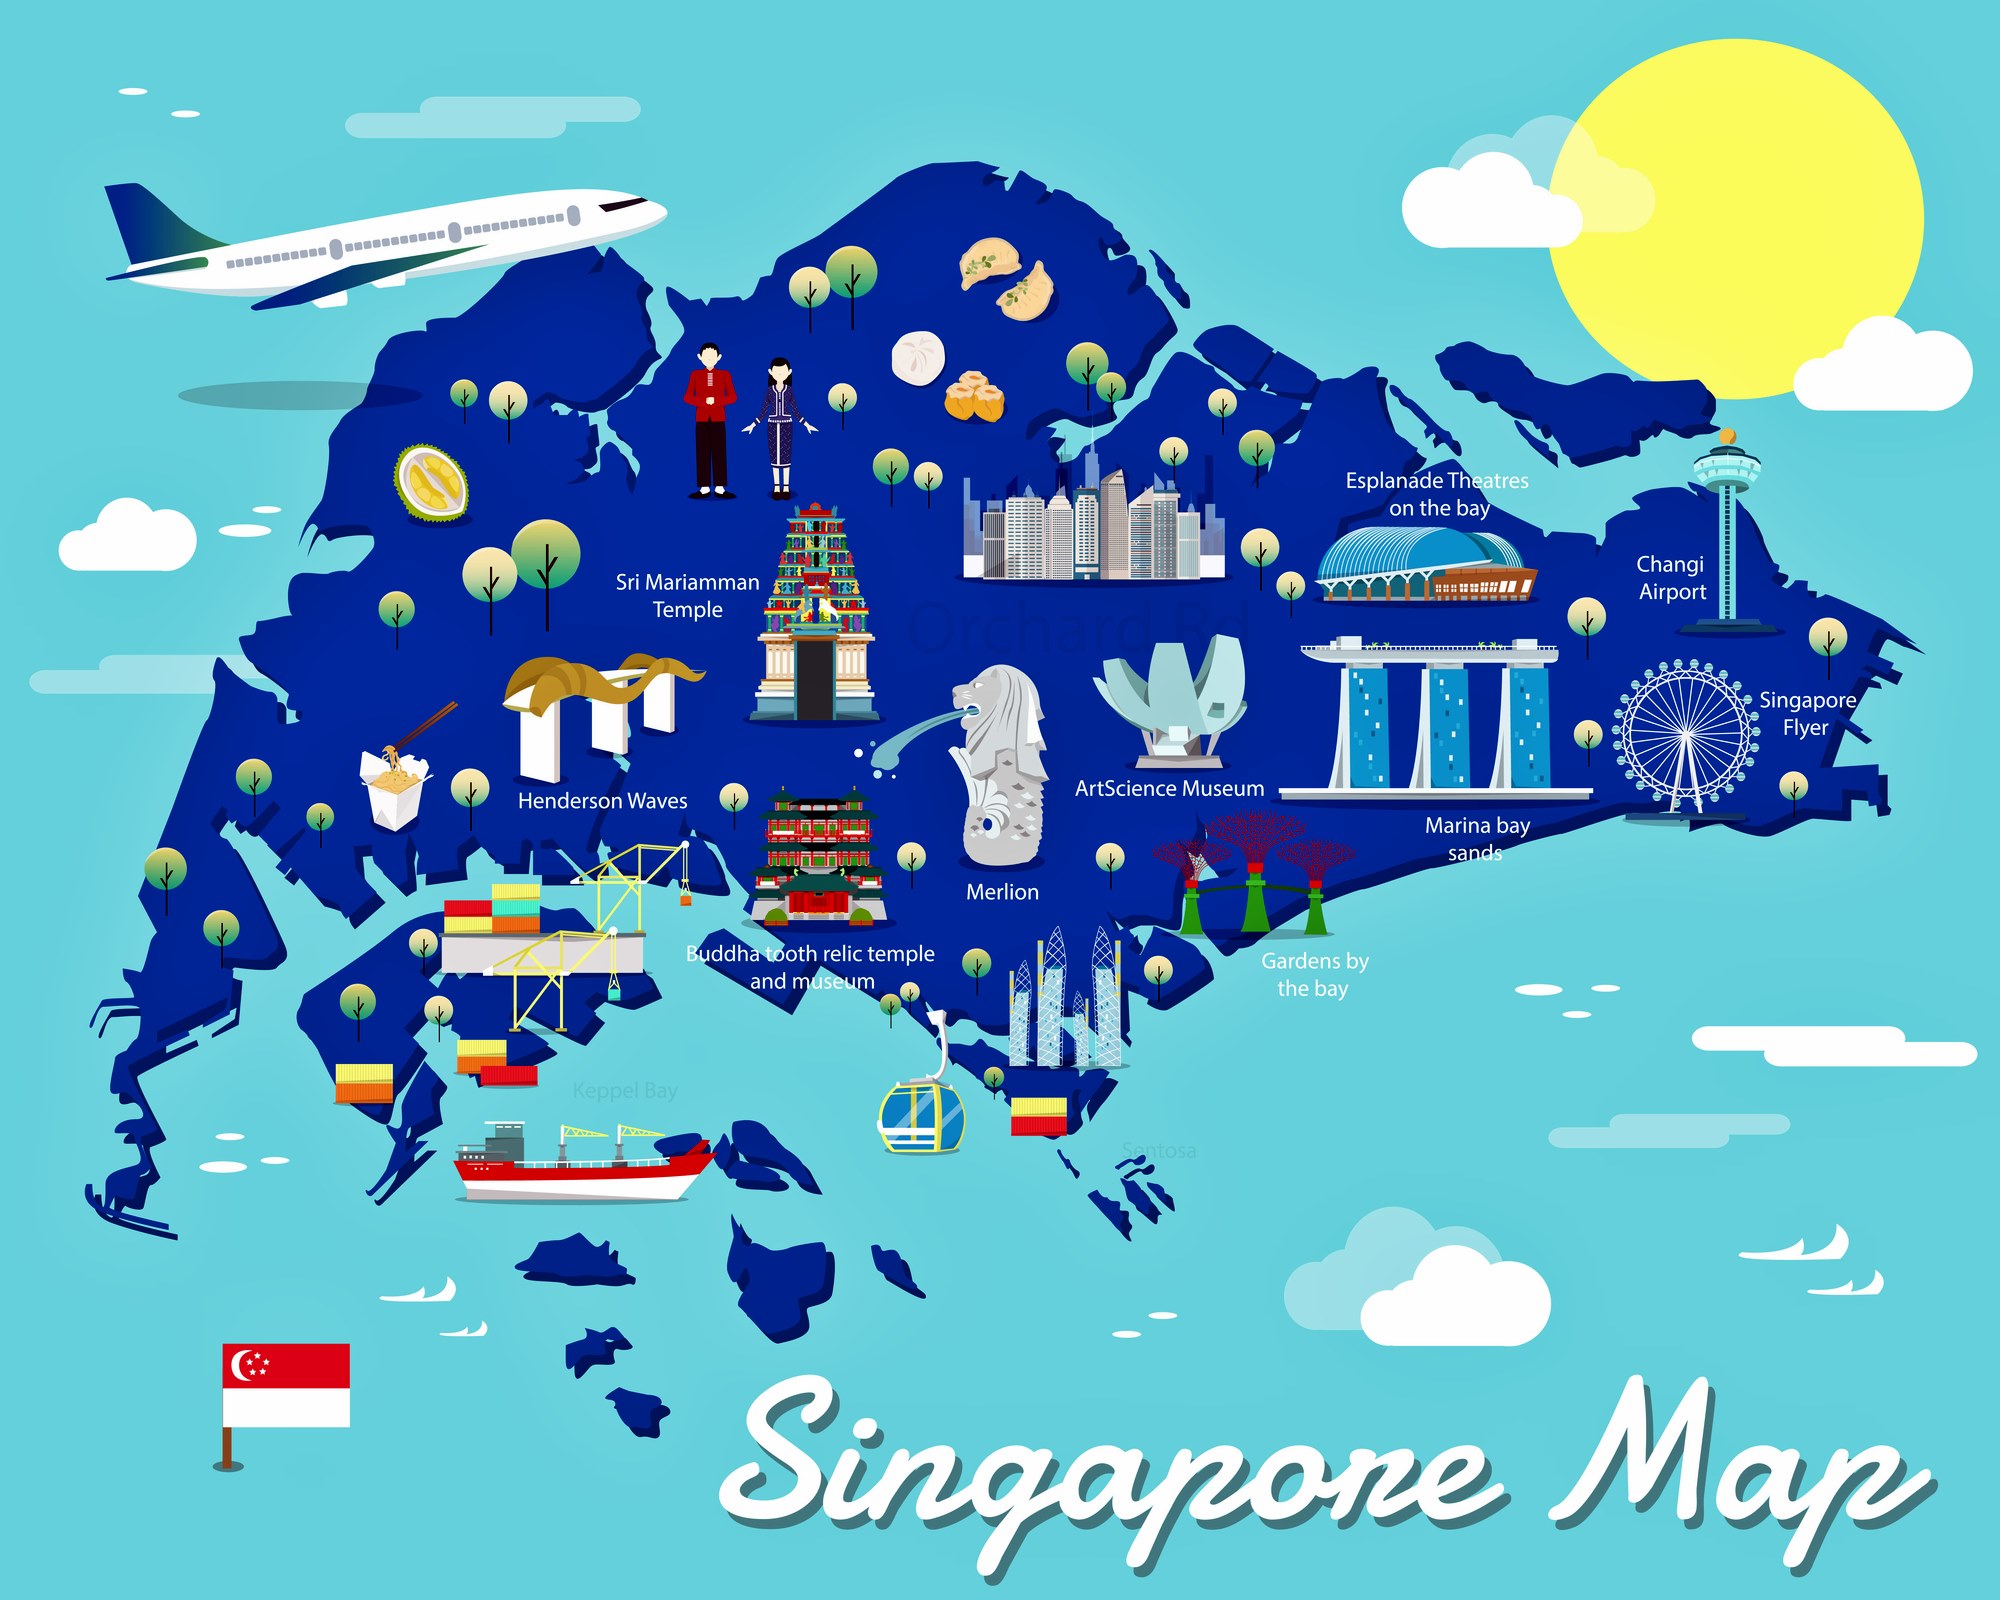 singapore tour guide pdf